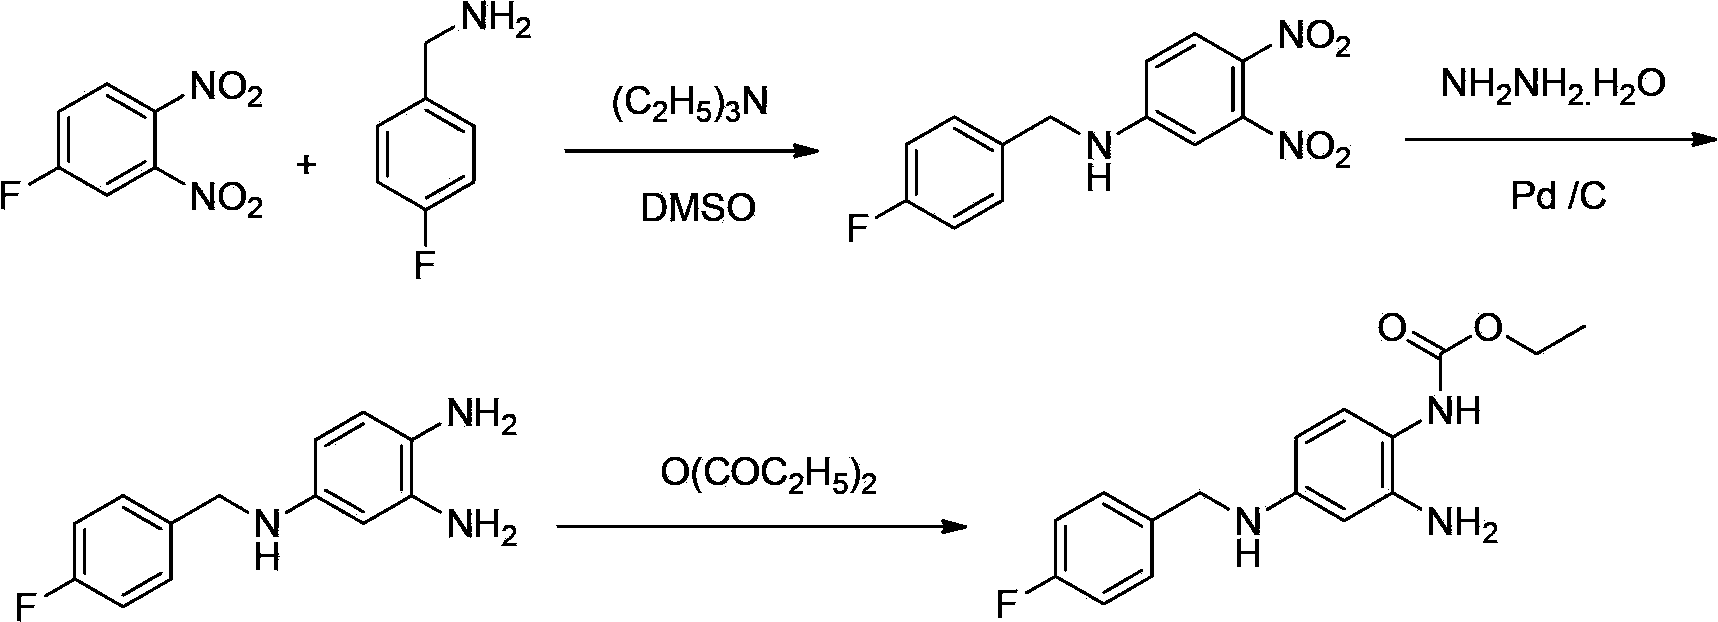 Method of synthesizing retigabine